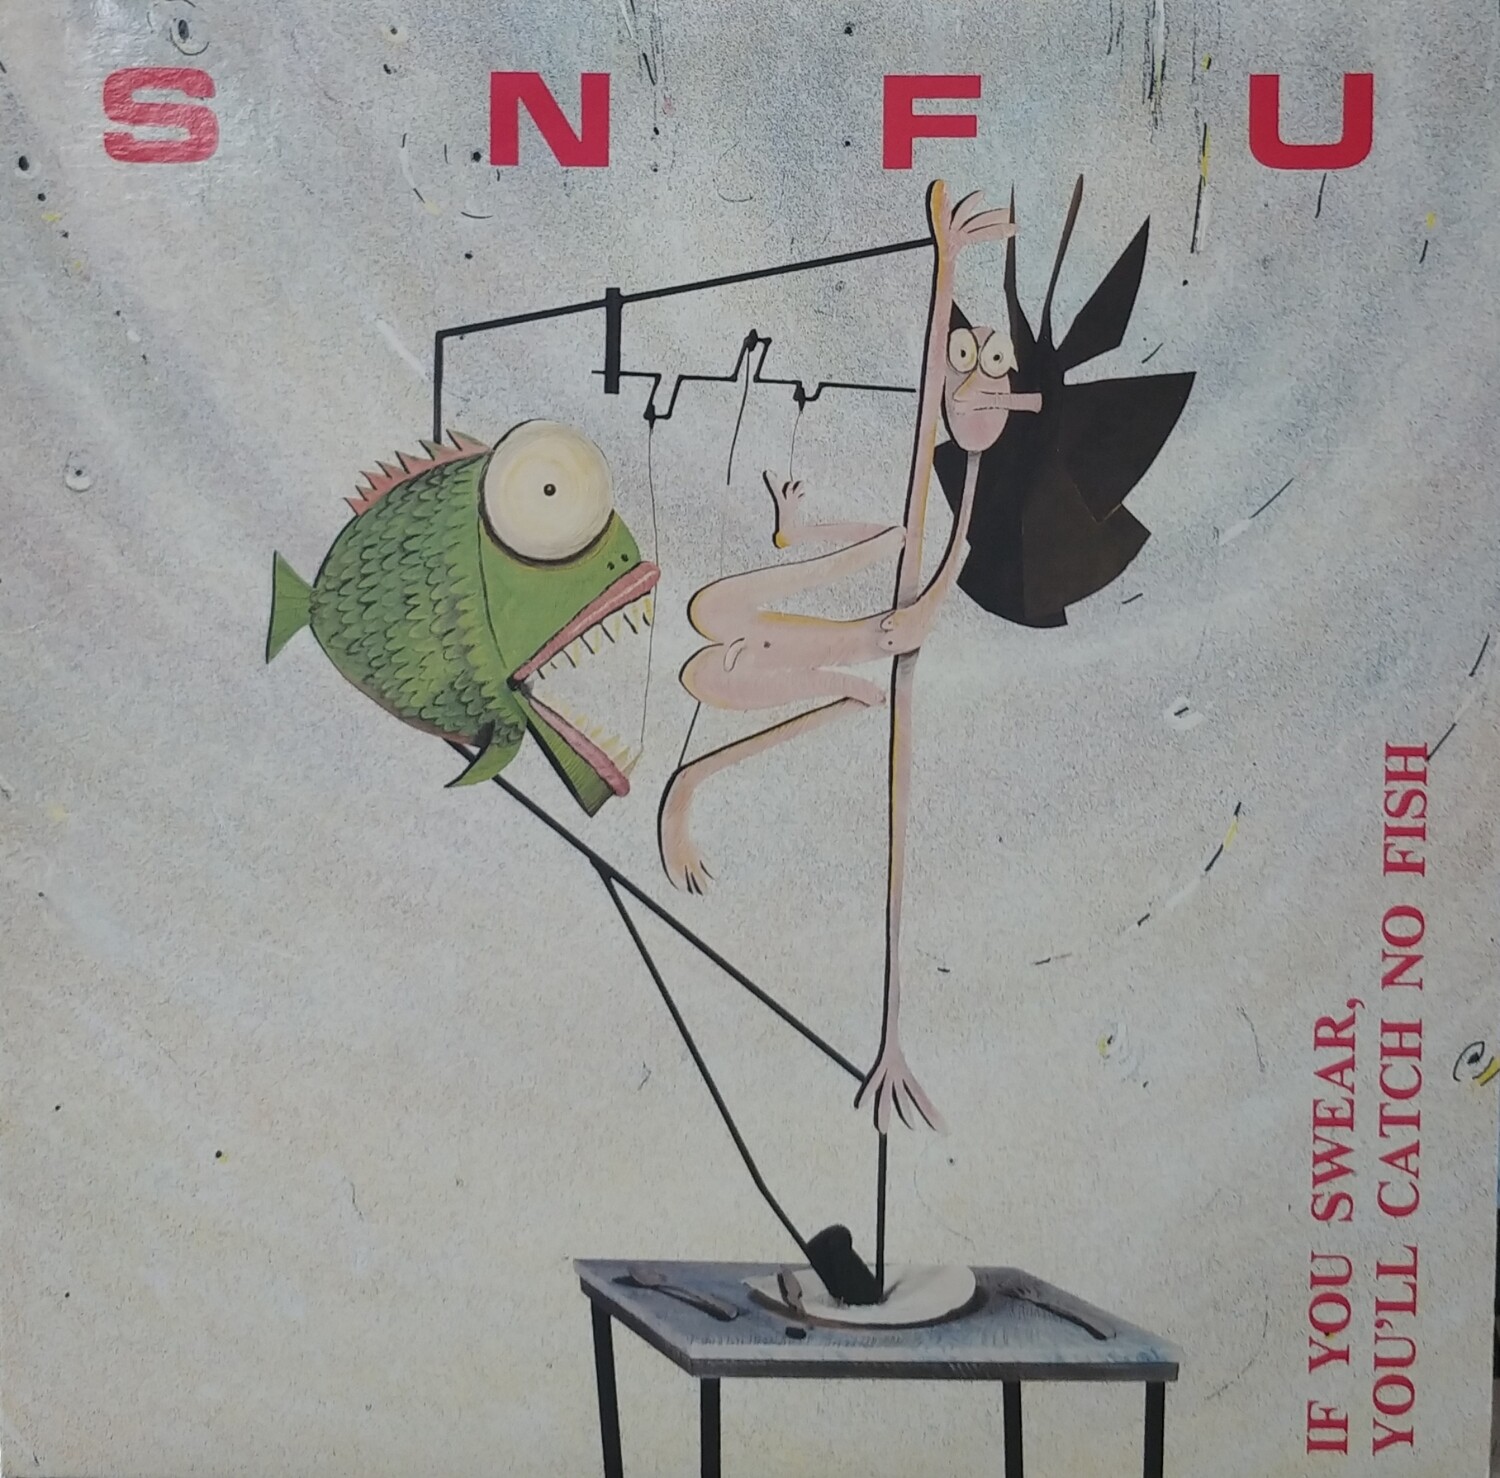 SNFU - If you swear, You'll Catch no Fish